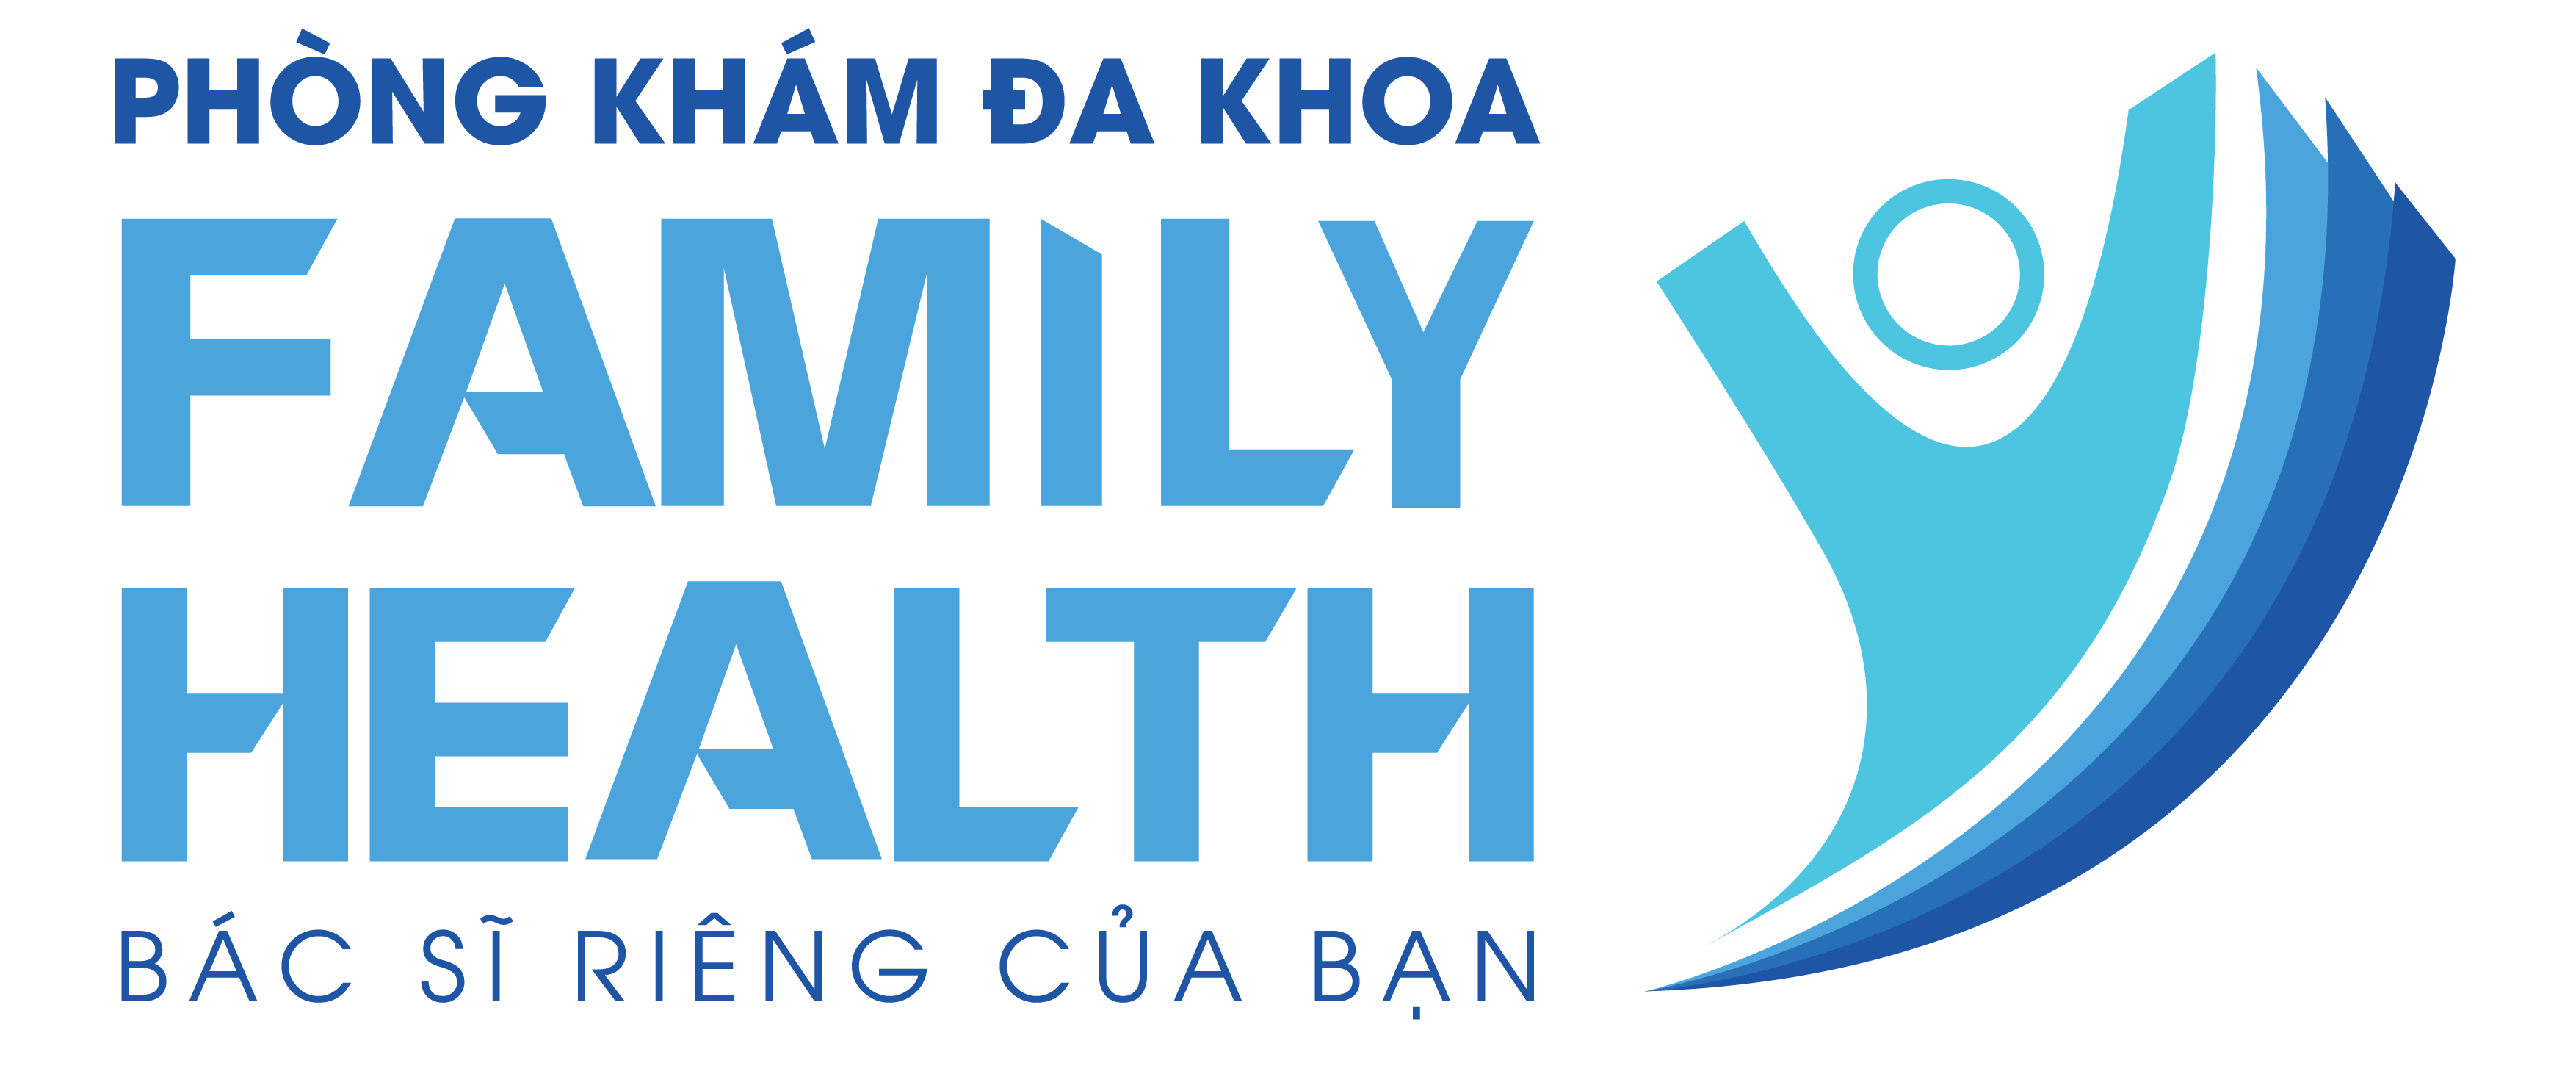 PHÒNG KHÁM ĐA KHOA FAMILY HEALTHY